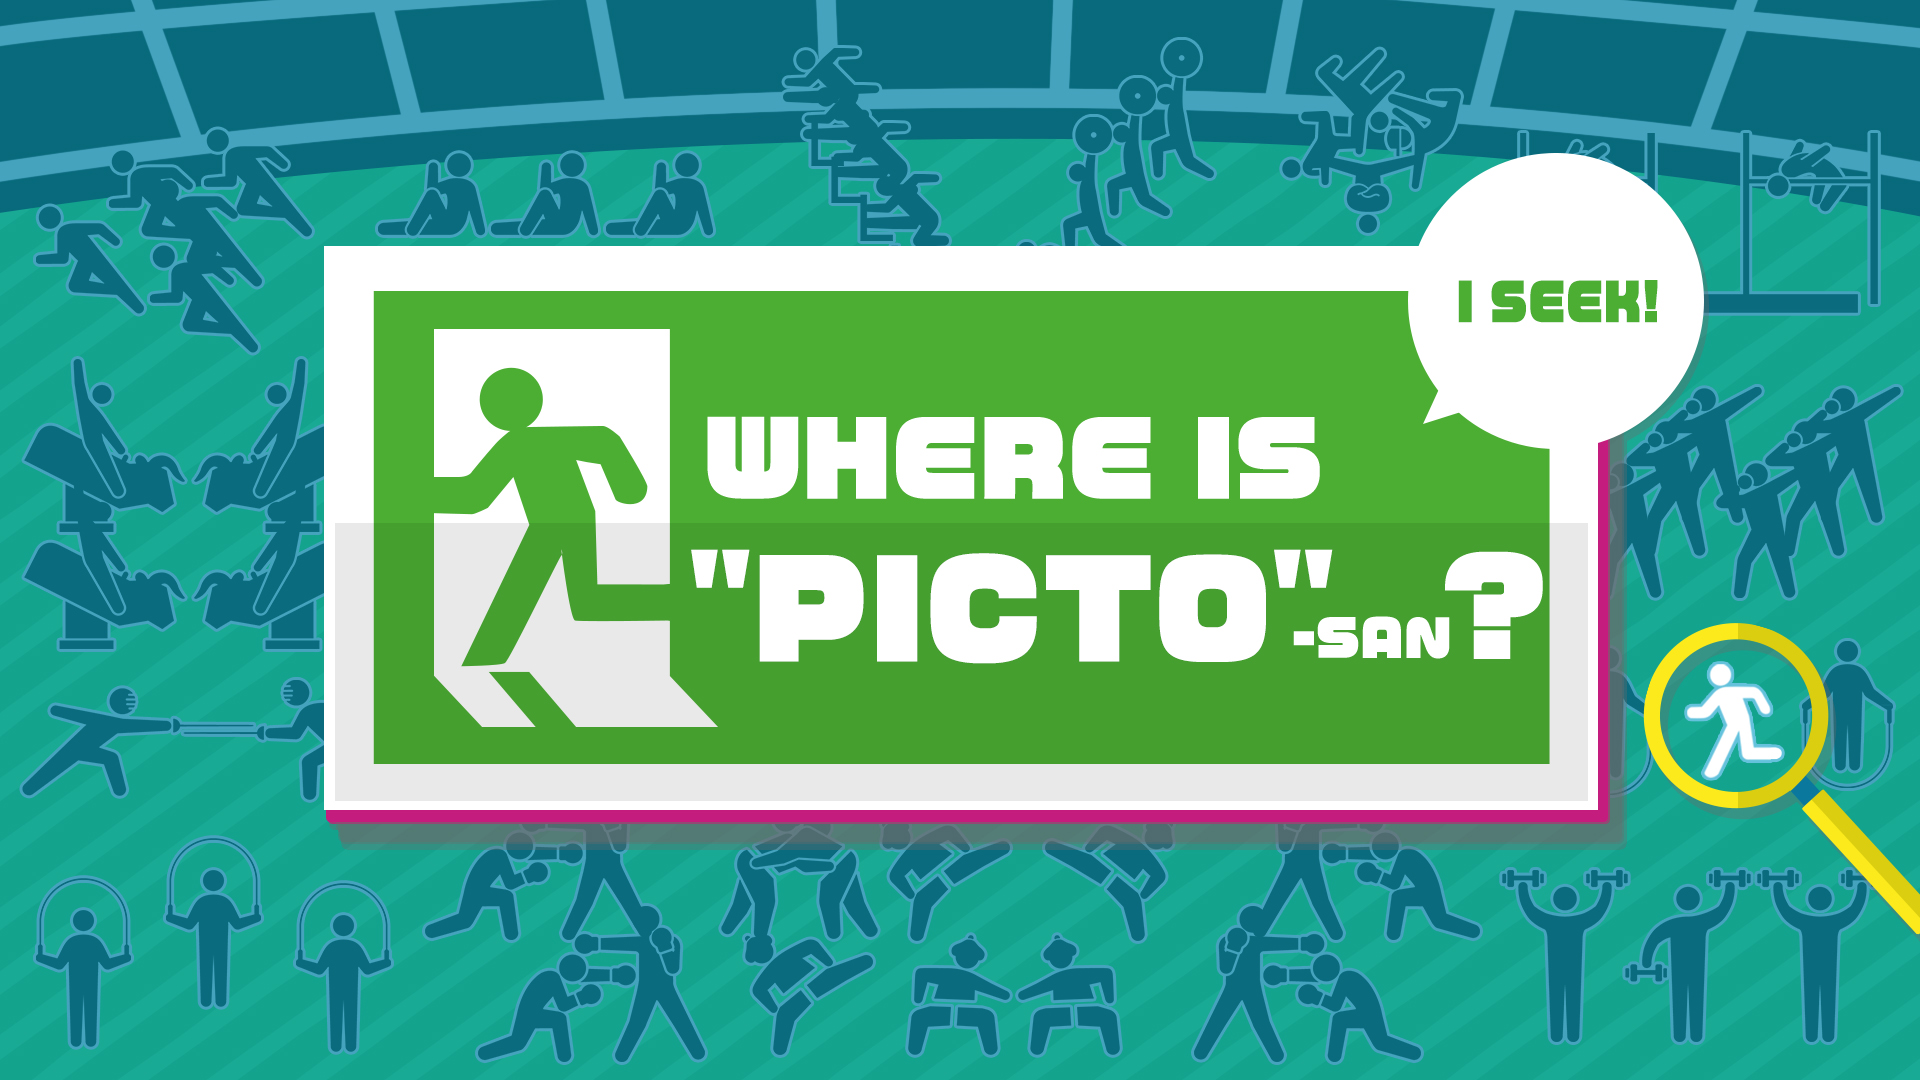 I SEEK! WHERE IS "PICTO"-SAN?